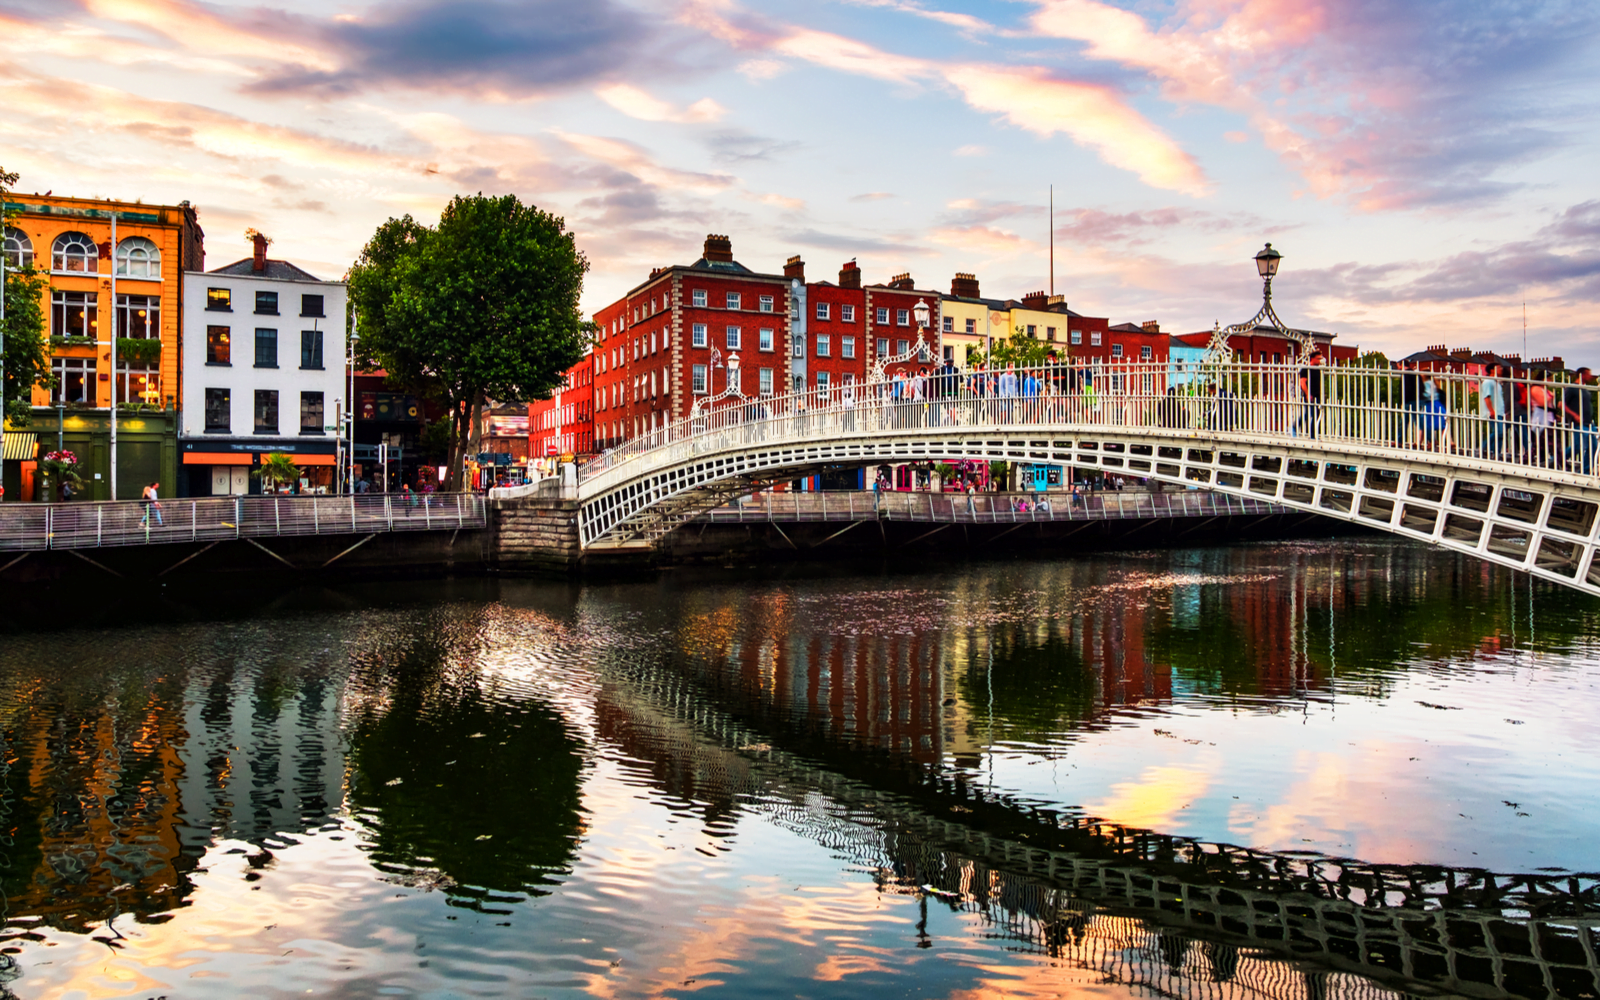 Ποια είναι η καλύτερη εποχή για να επισκεφτείτε το Δουβλίνο;